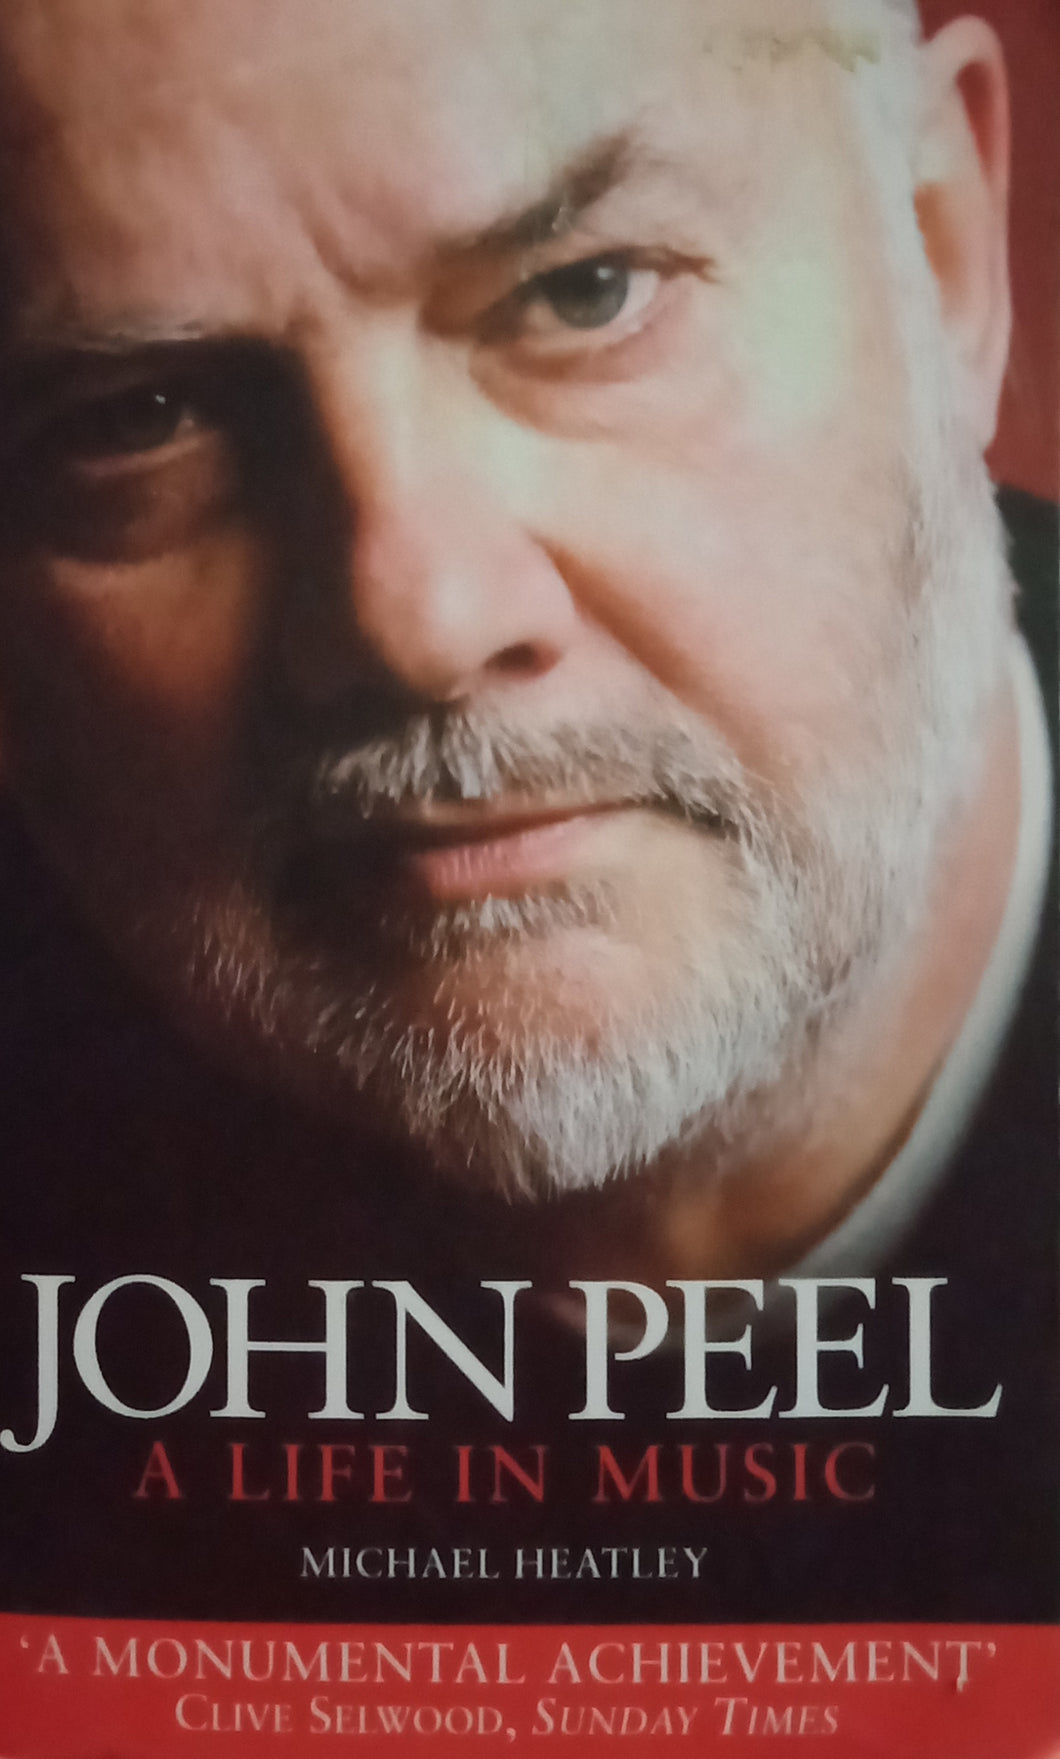 John Peel A Life In Music by Michael Heatley